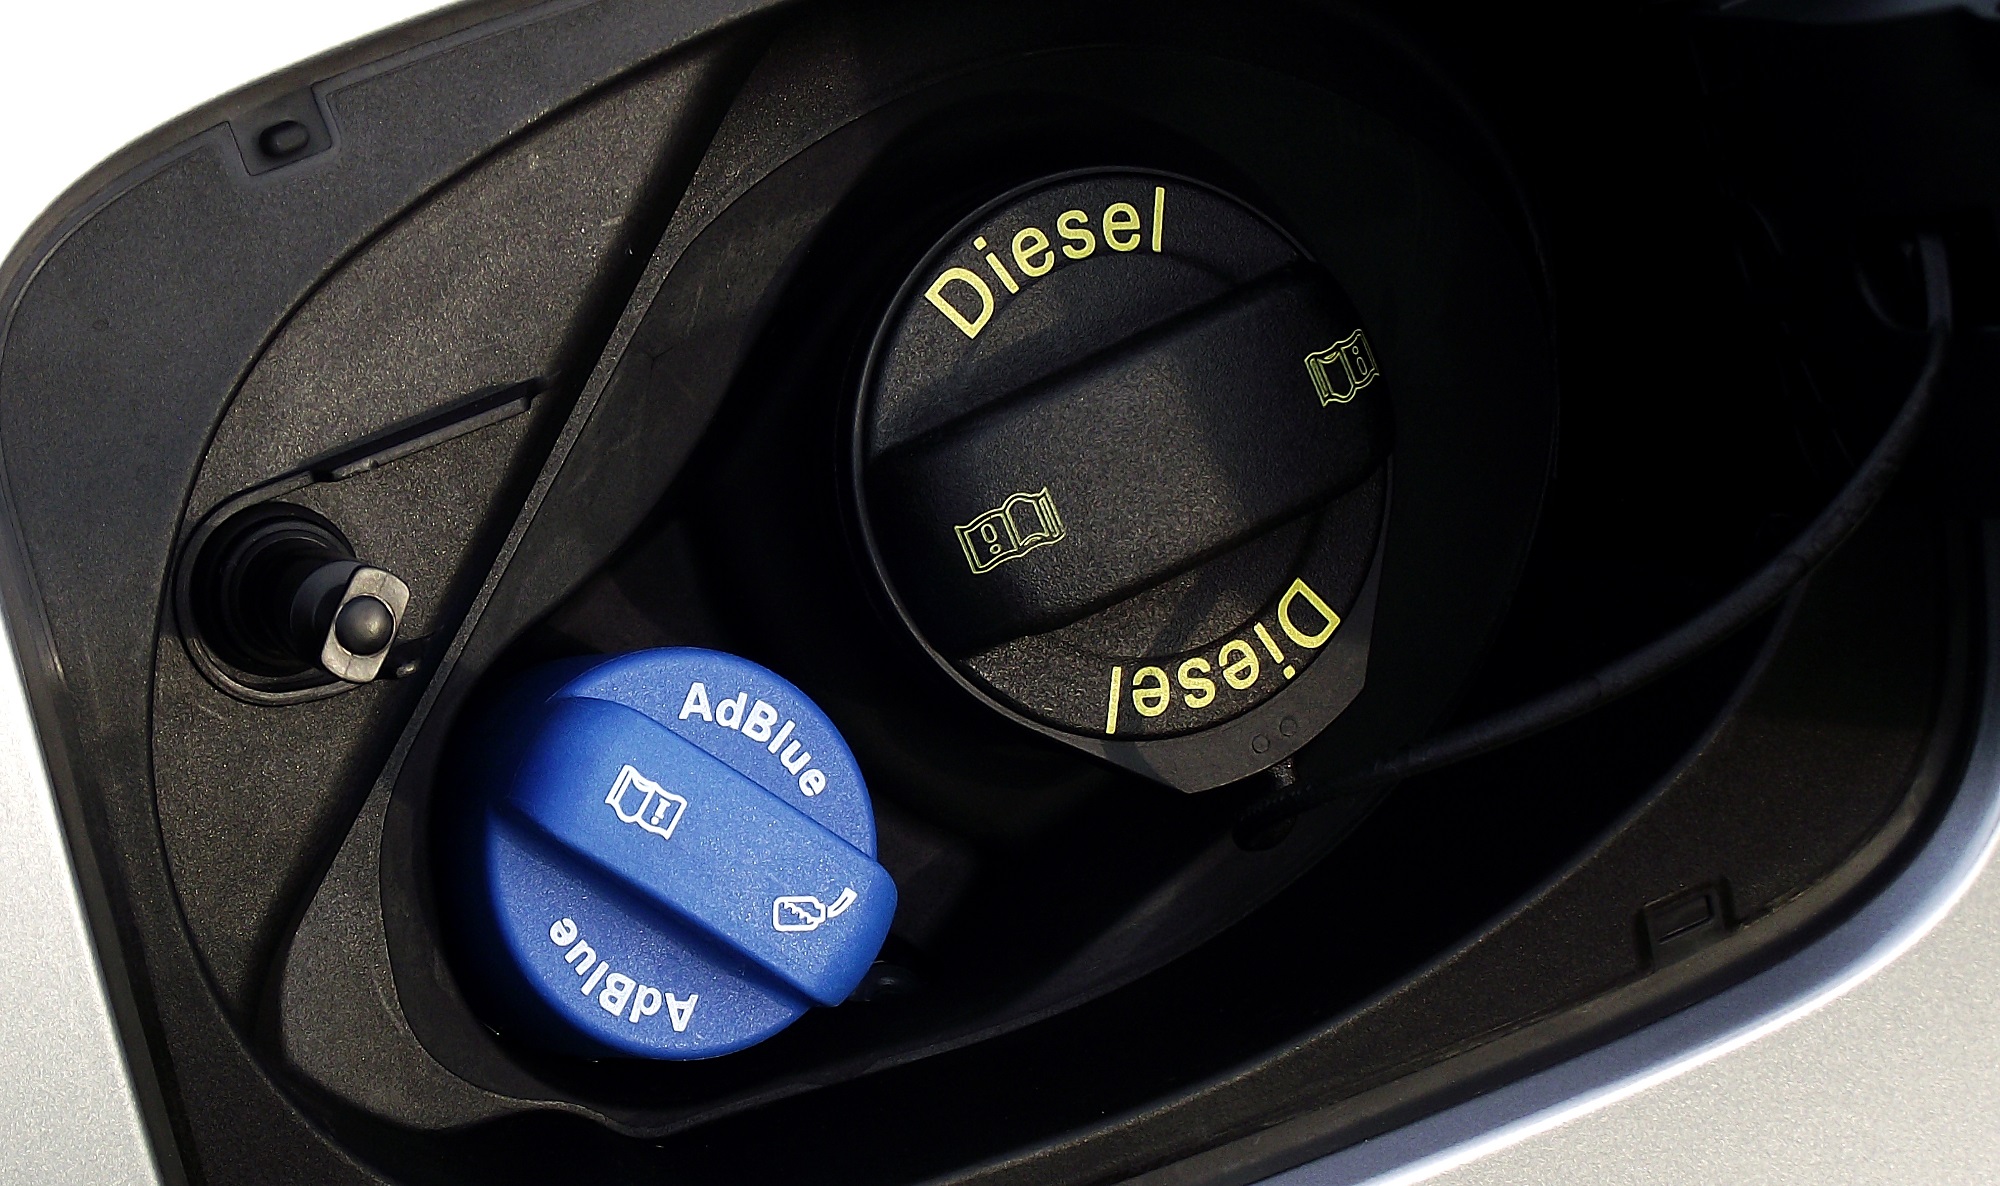 Skal jeg vælge benzin eller diesel? Bilmagasinet.dk